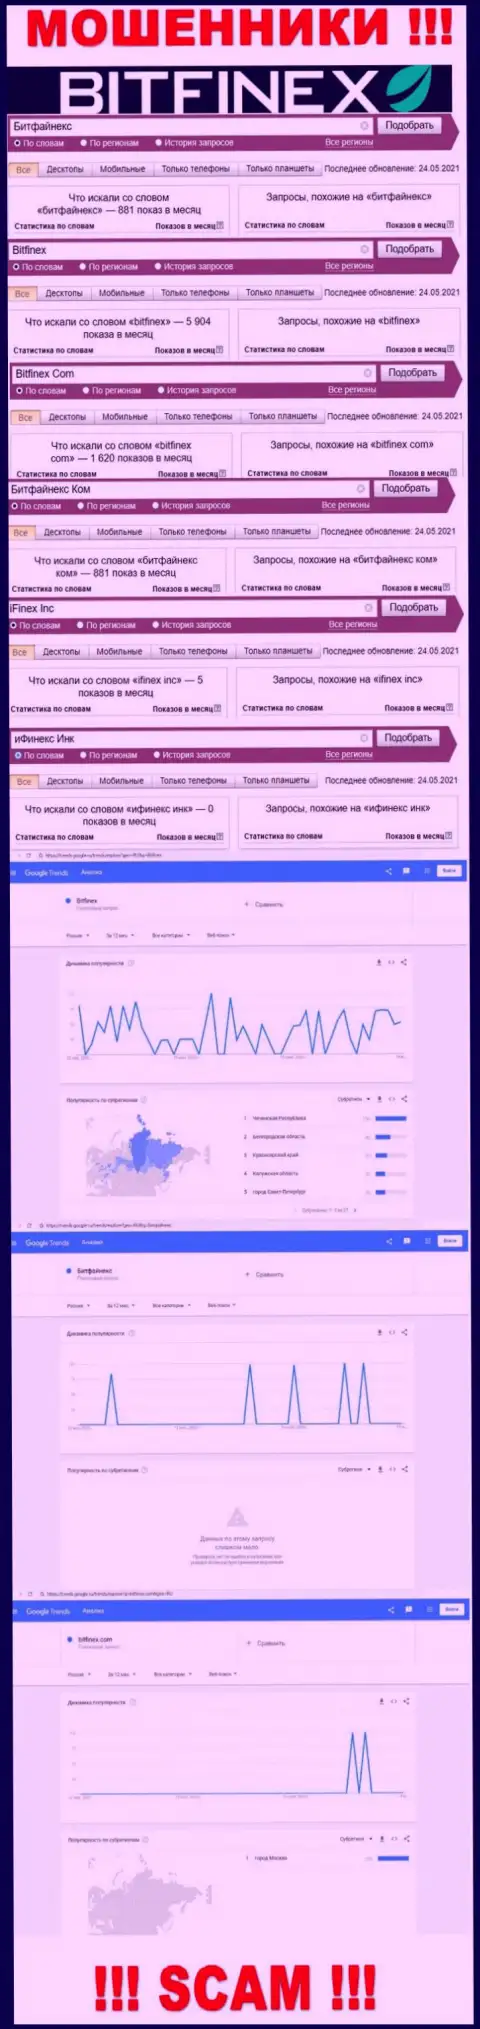 Количество запросов в поисковиках глобальной сети по бренду мошенников Битфайнекс Ком